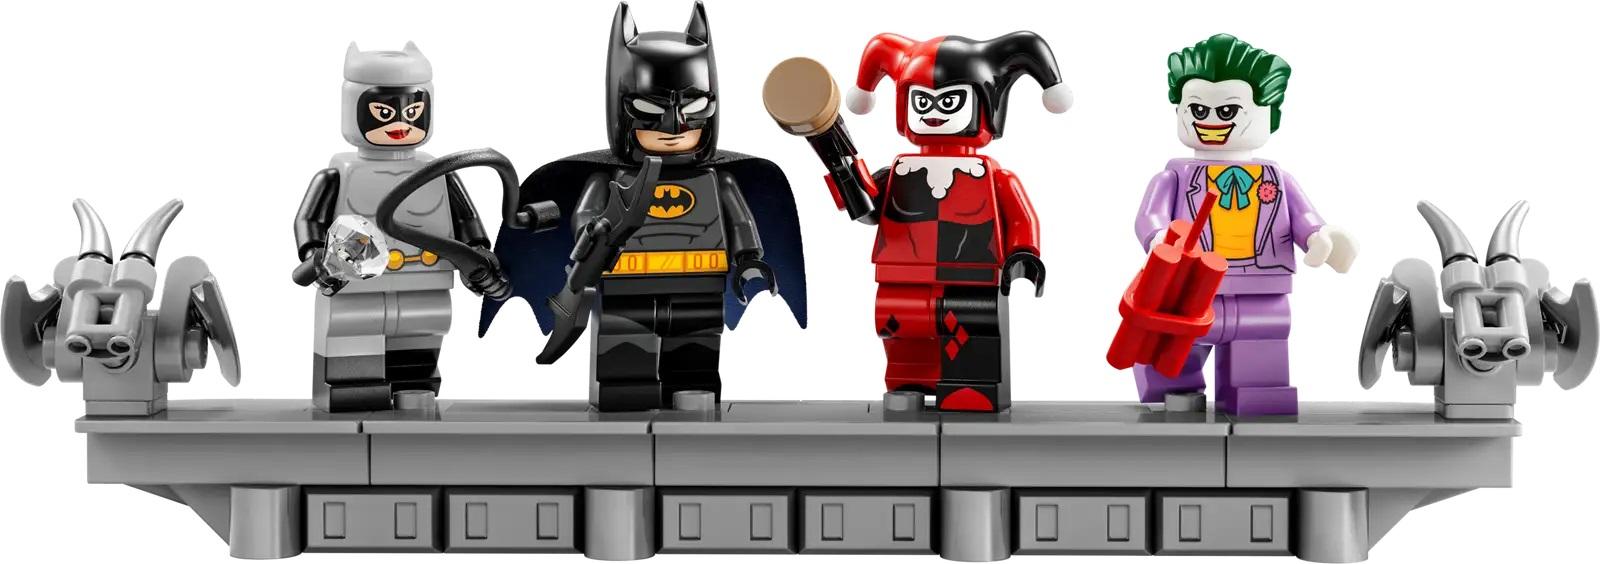 祝バットマン85周年。レゴがアニメ版ゴッサム・シティのセットを発表 | ギズモード・ジャパン